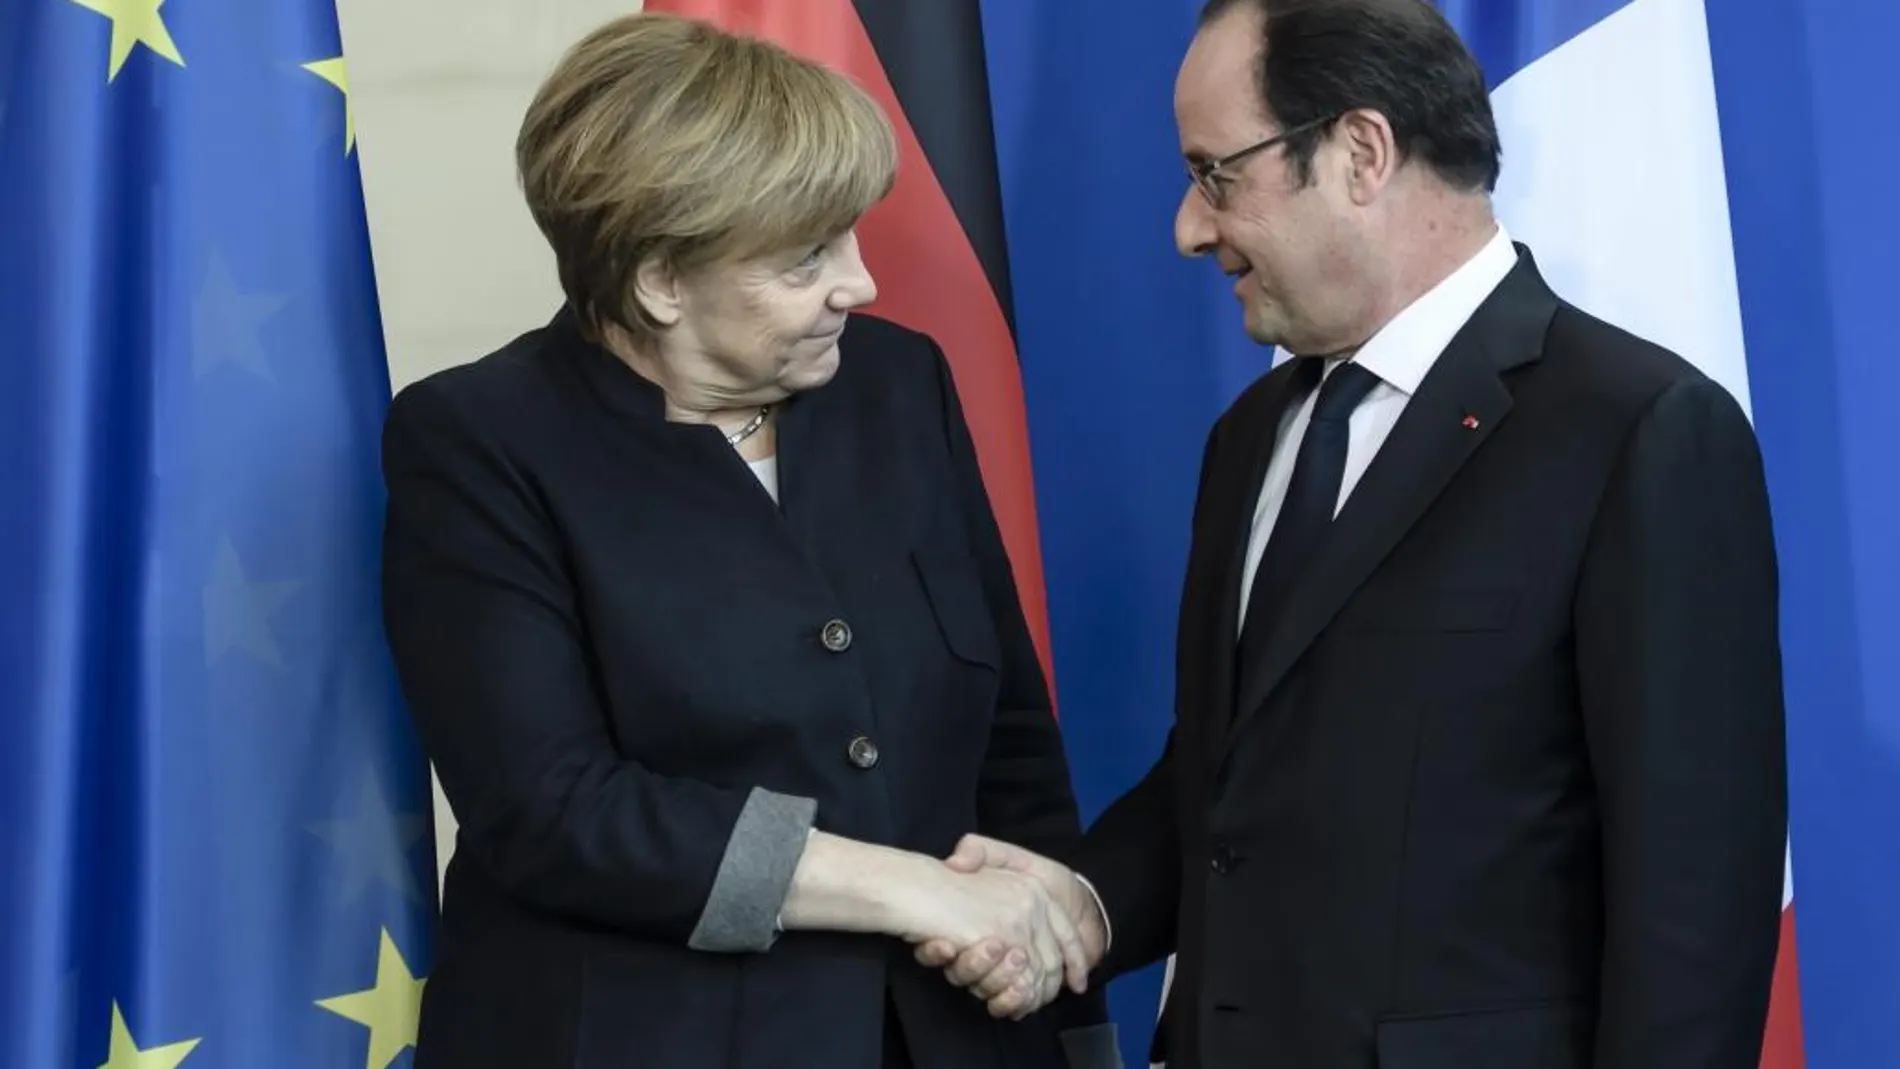 La canciller alemana, Angela Merkel, estrecha la mano del presidente francés, François Hollande, tras una rueda de prensa conjunta